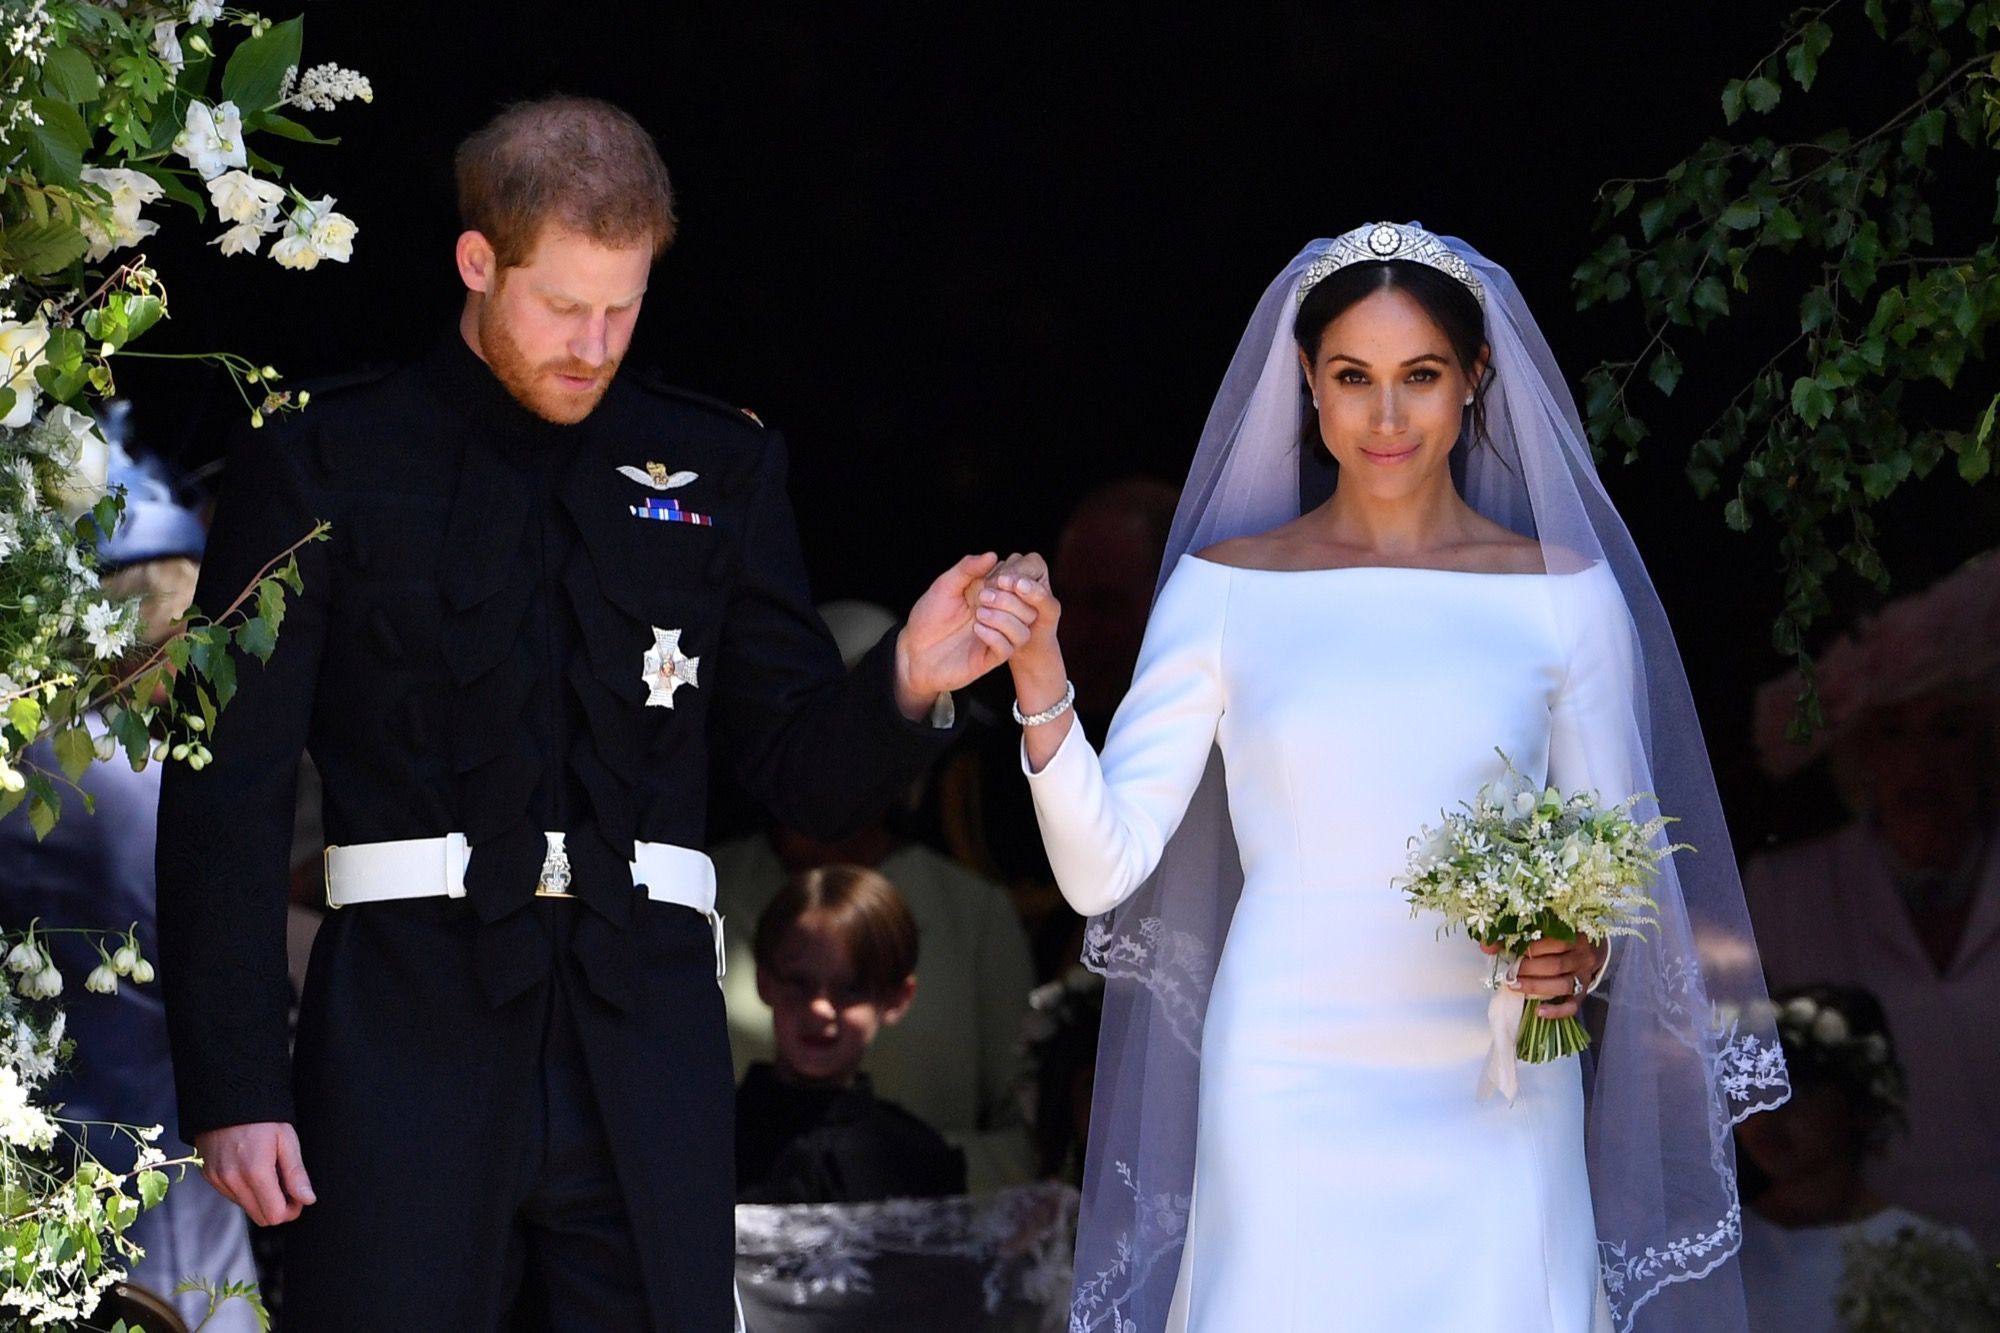 Le mariage des Sussex, le 19 mai 2028 `| Photo : Getty Images